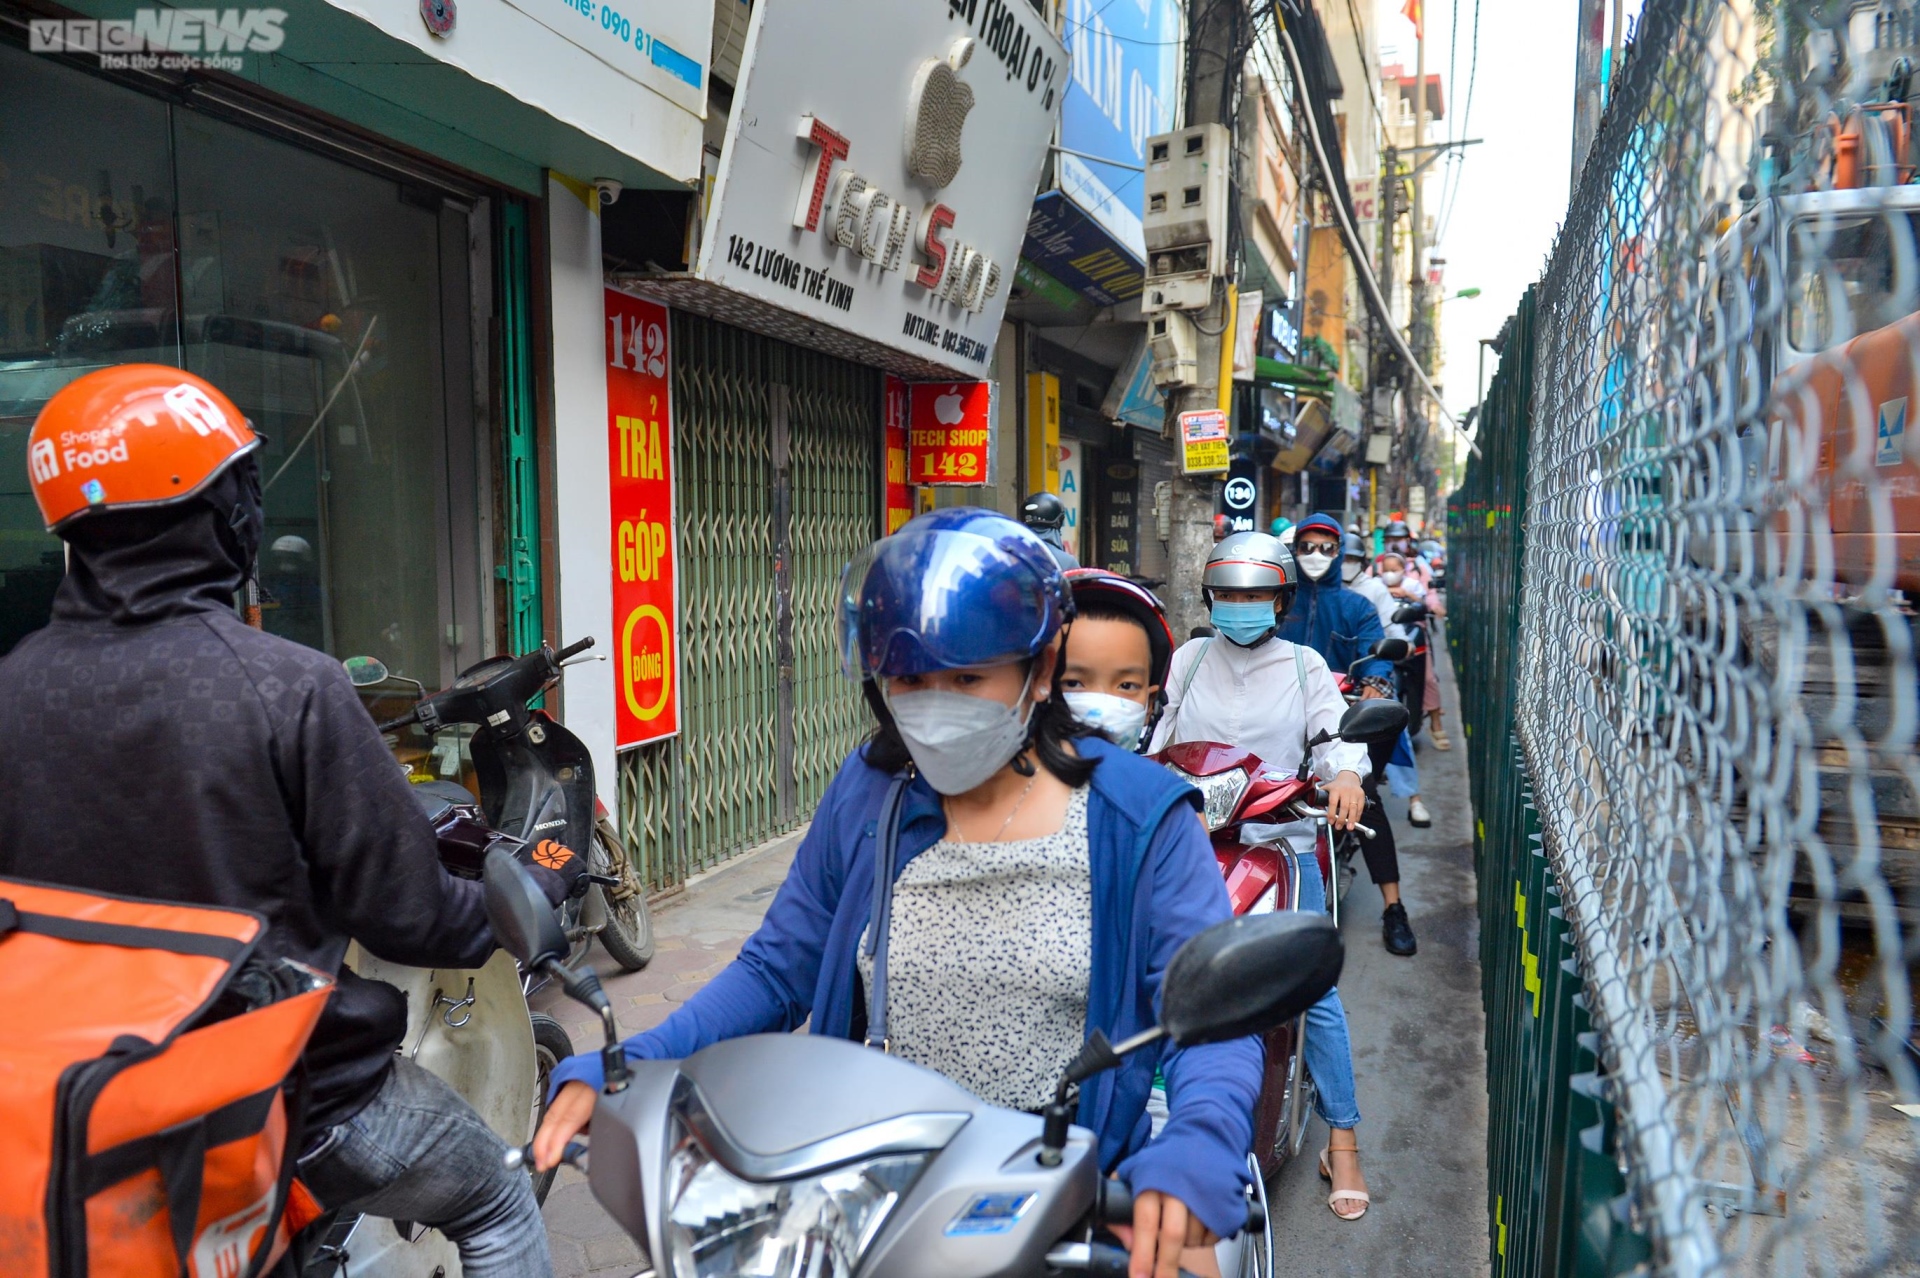 Rào tôn chắn gần hết lòng đường ở Hà Nội, dân khổ sở luồn lách đi qua - Ảnh 12.